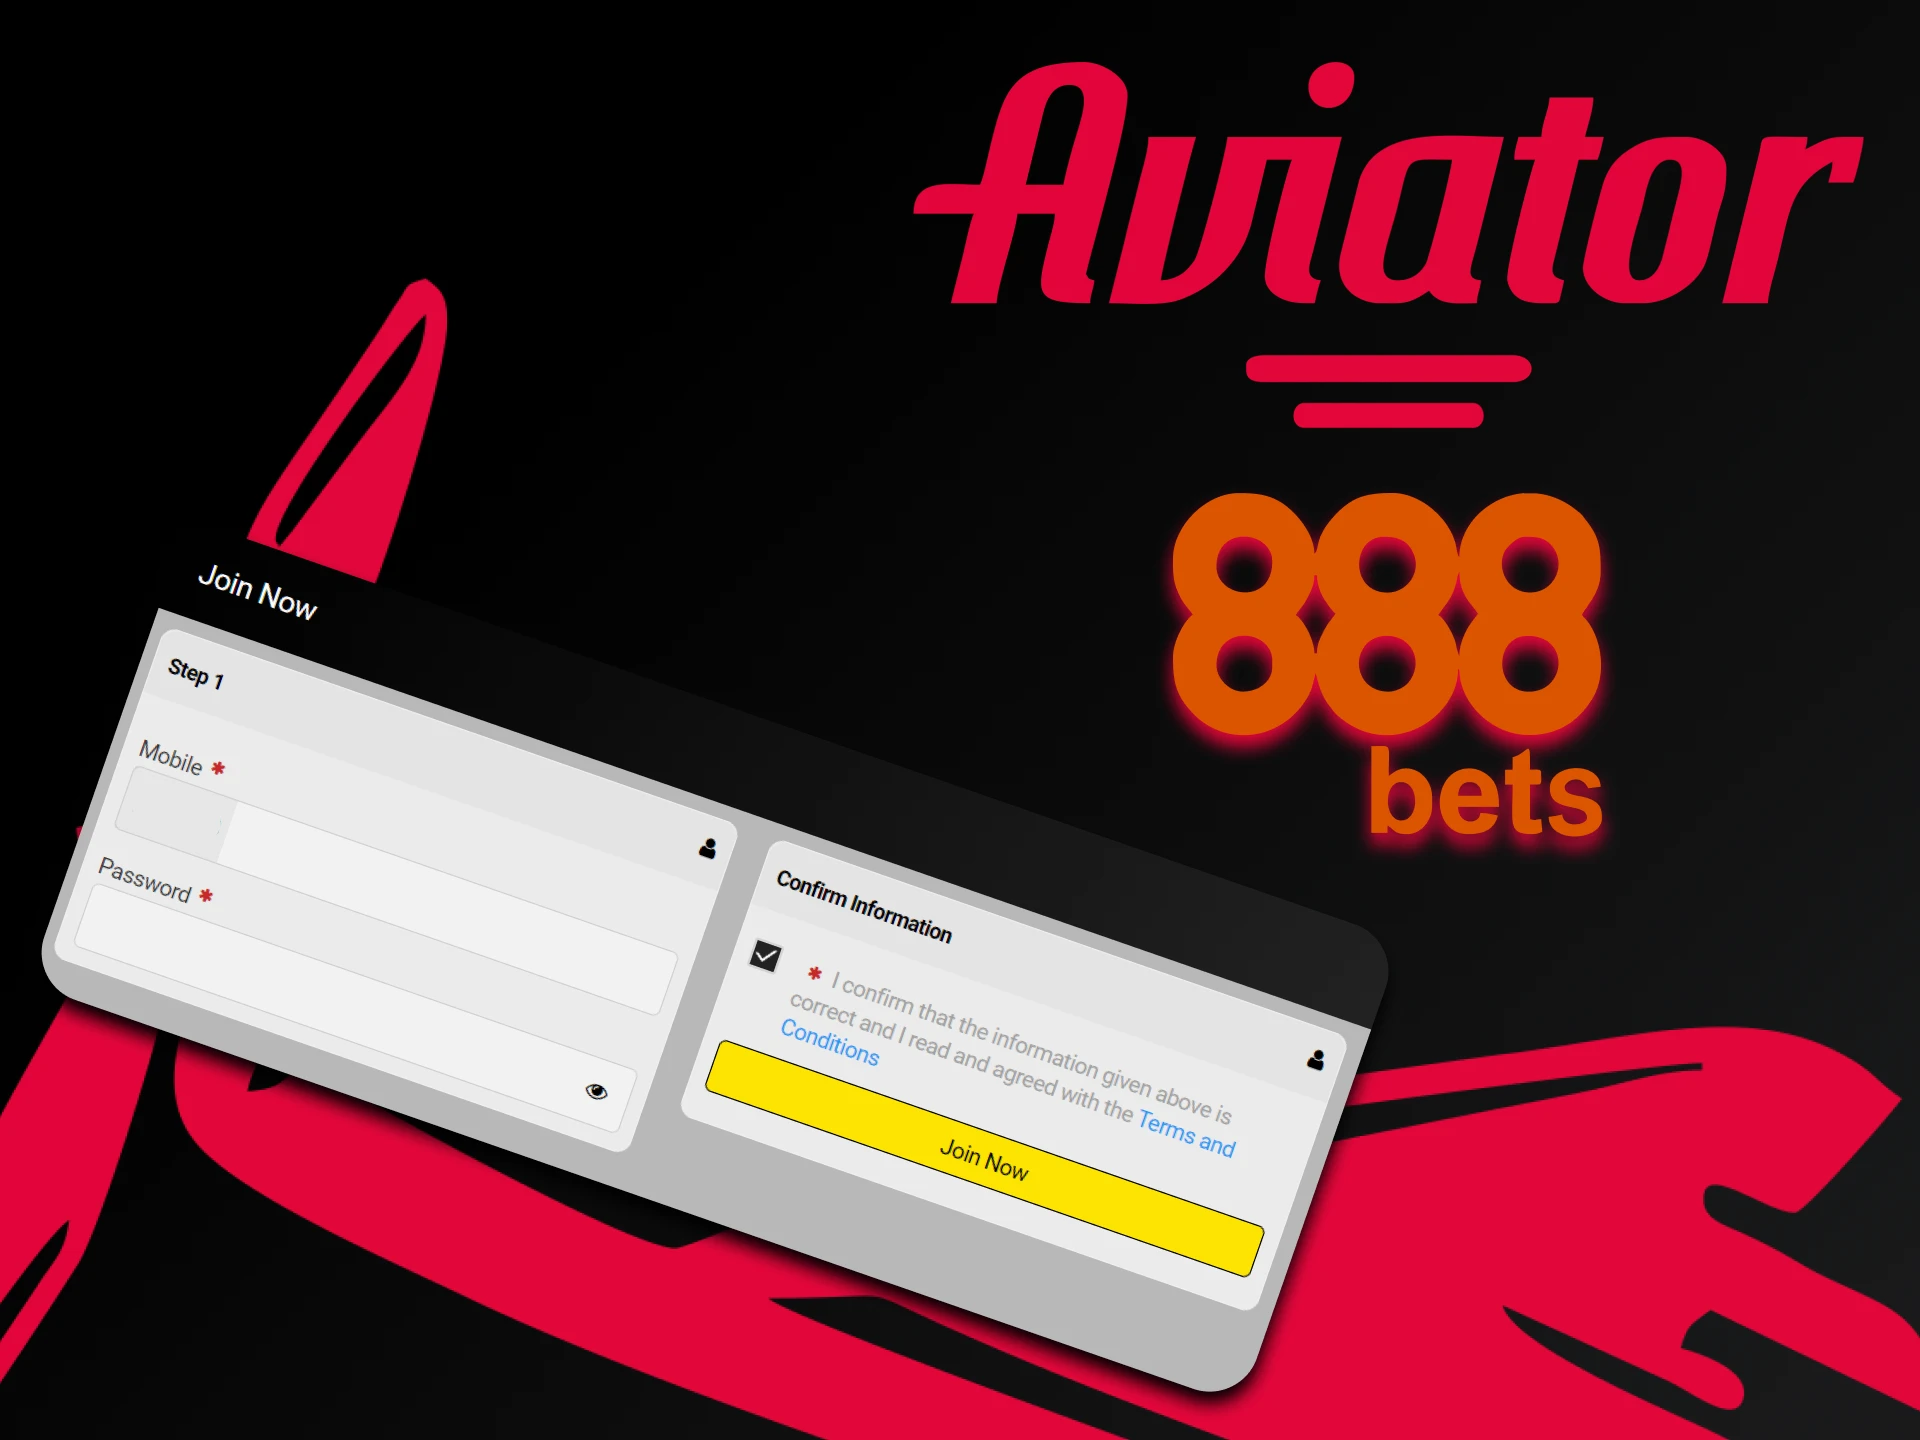 Passe pelo processo de registro na 888bet para jogar Aviator.